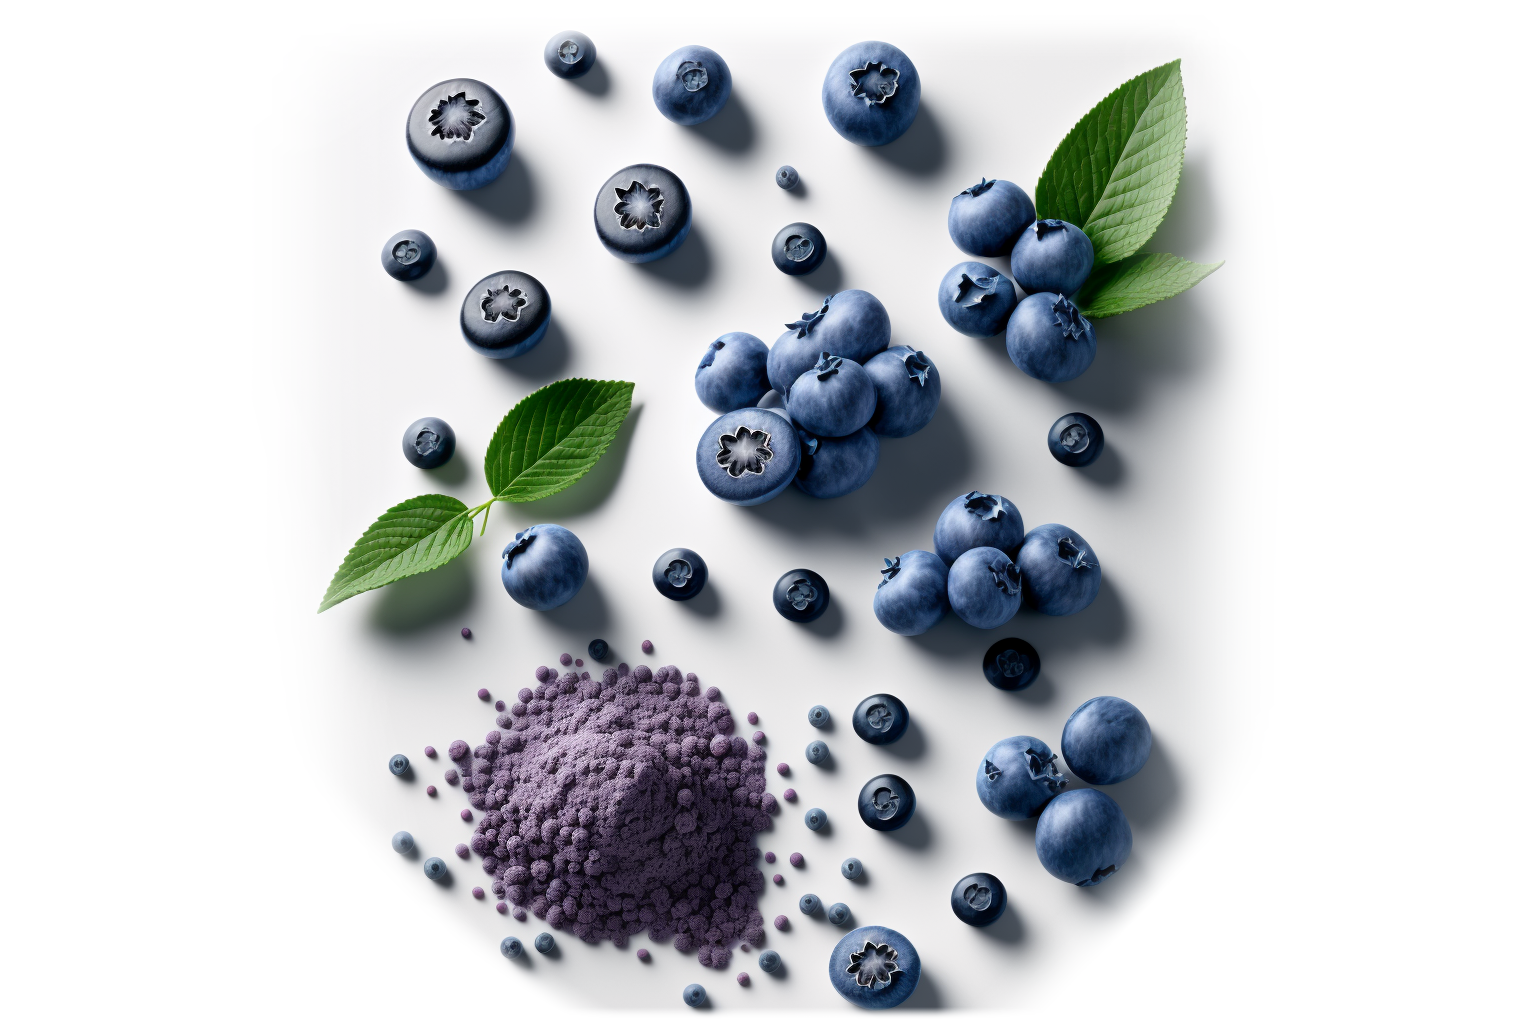 blueberry powder ingredients